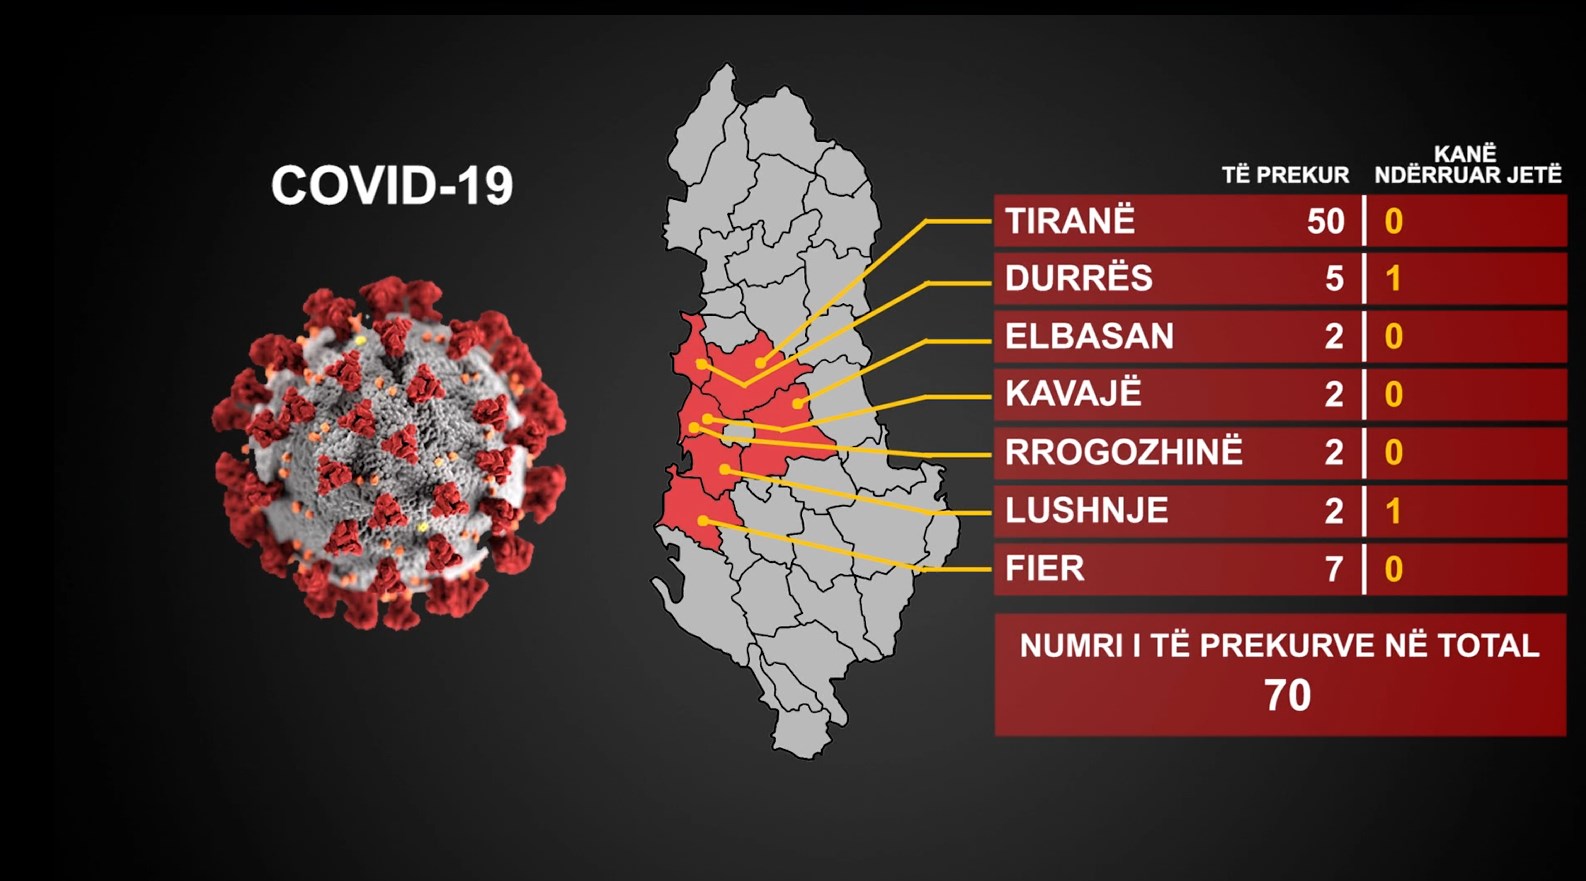 6 raste të reja në Shqipëri,shkon 70 numri i të prekurve me koronavirus